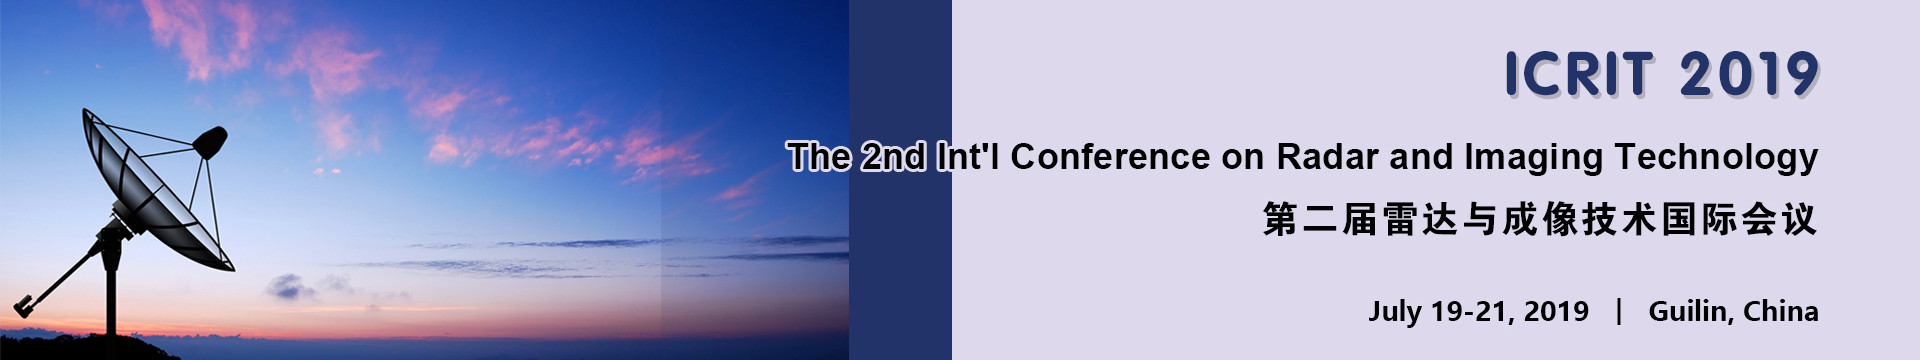 第二届雷达与成像技术国际会议-桂林(ICRIT 2019)